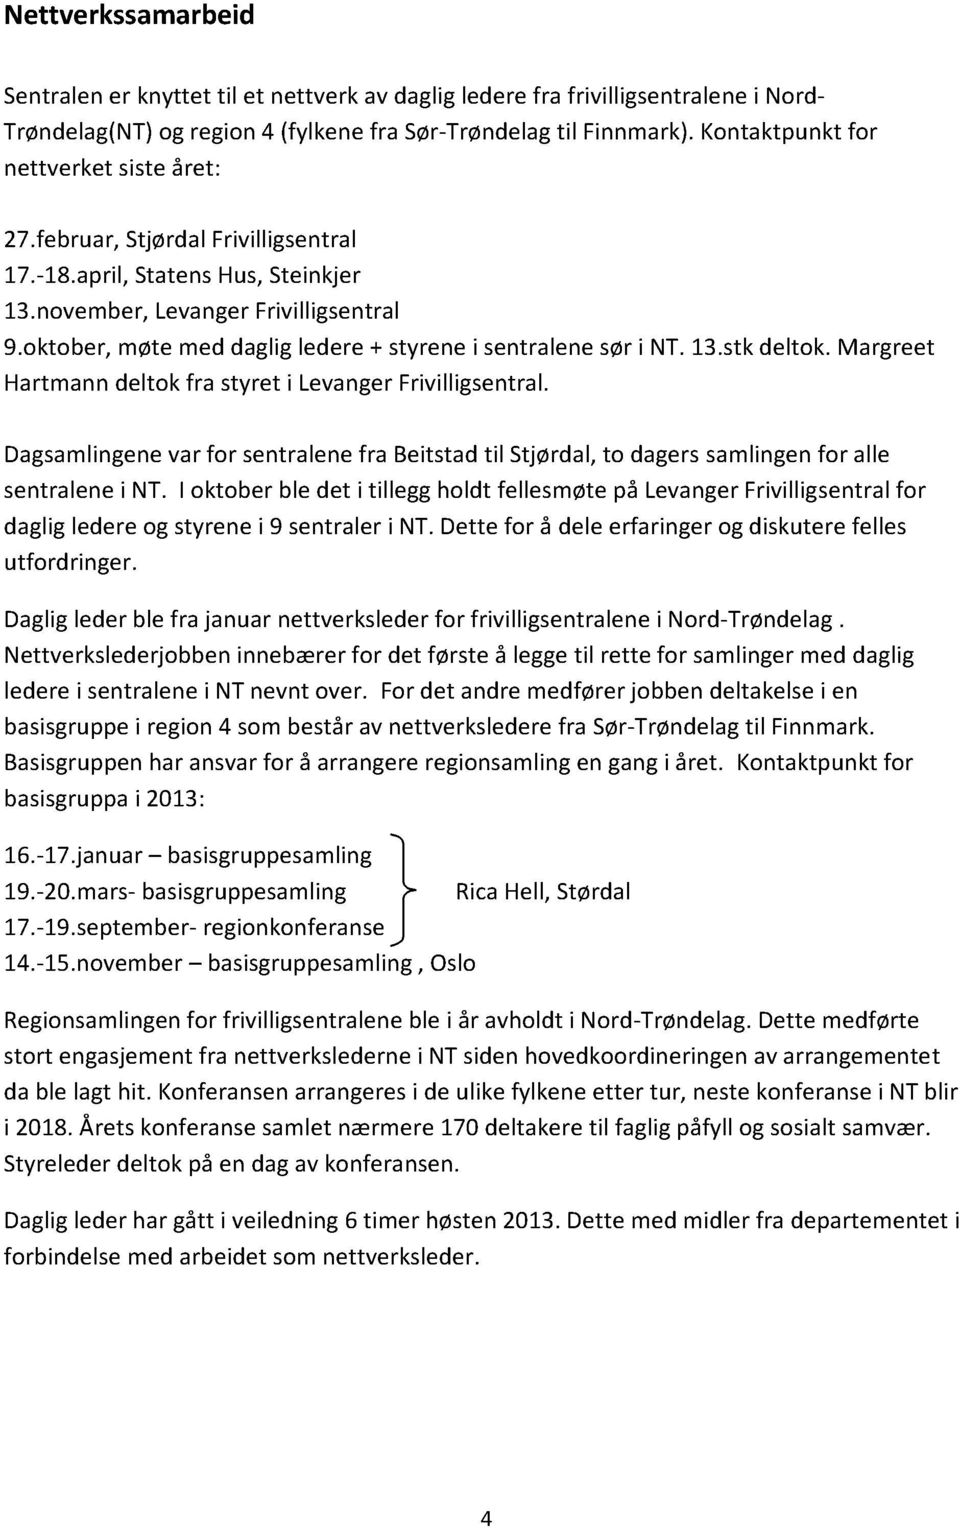 oktober,møte meddagligledere+ styrenei sentralenesøri NT.13.stkdeltok. Margreet Hartmanndeltok fra styret i LevangerFrivilligsentral.